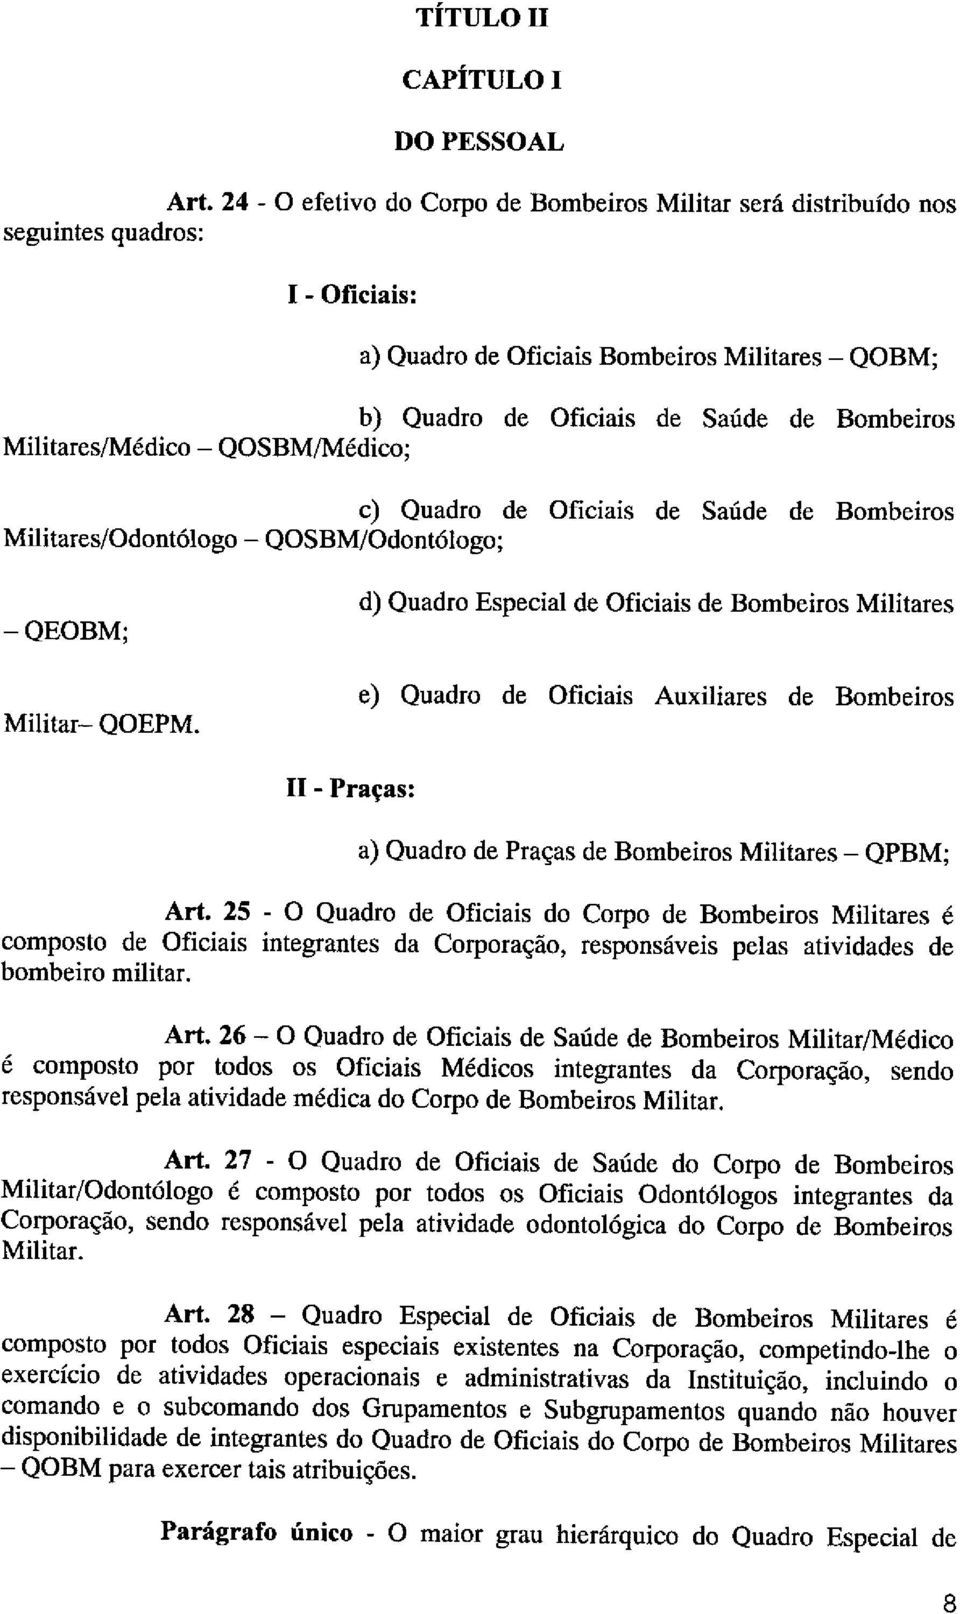 Militares/Médico - QOSBM/Médico; c) Quadro de Oficiais de Saúde de Bombeiros Militares/Odontólogo - QOSBM/Odontólogo; -QEOBM; Militar- QOEPM.